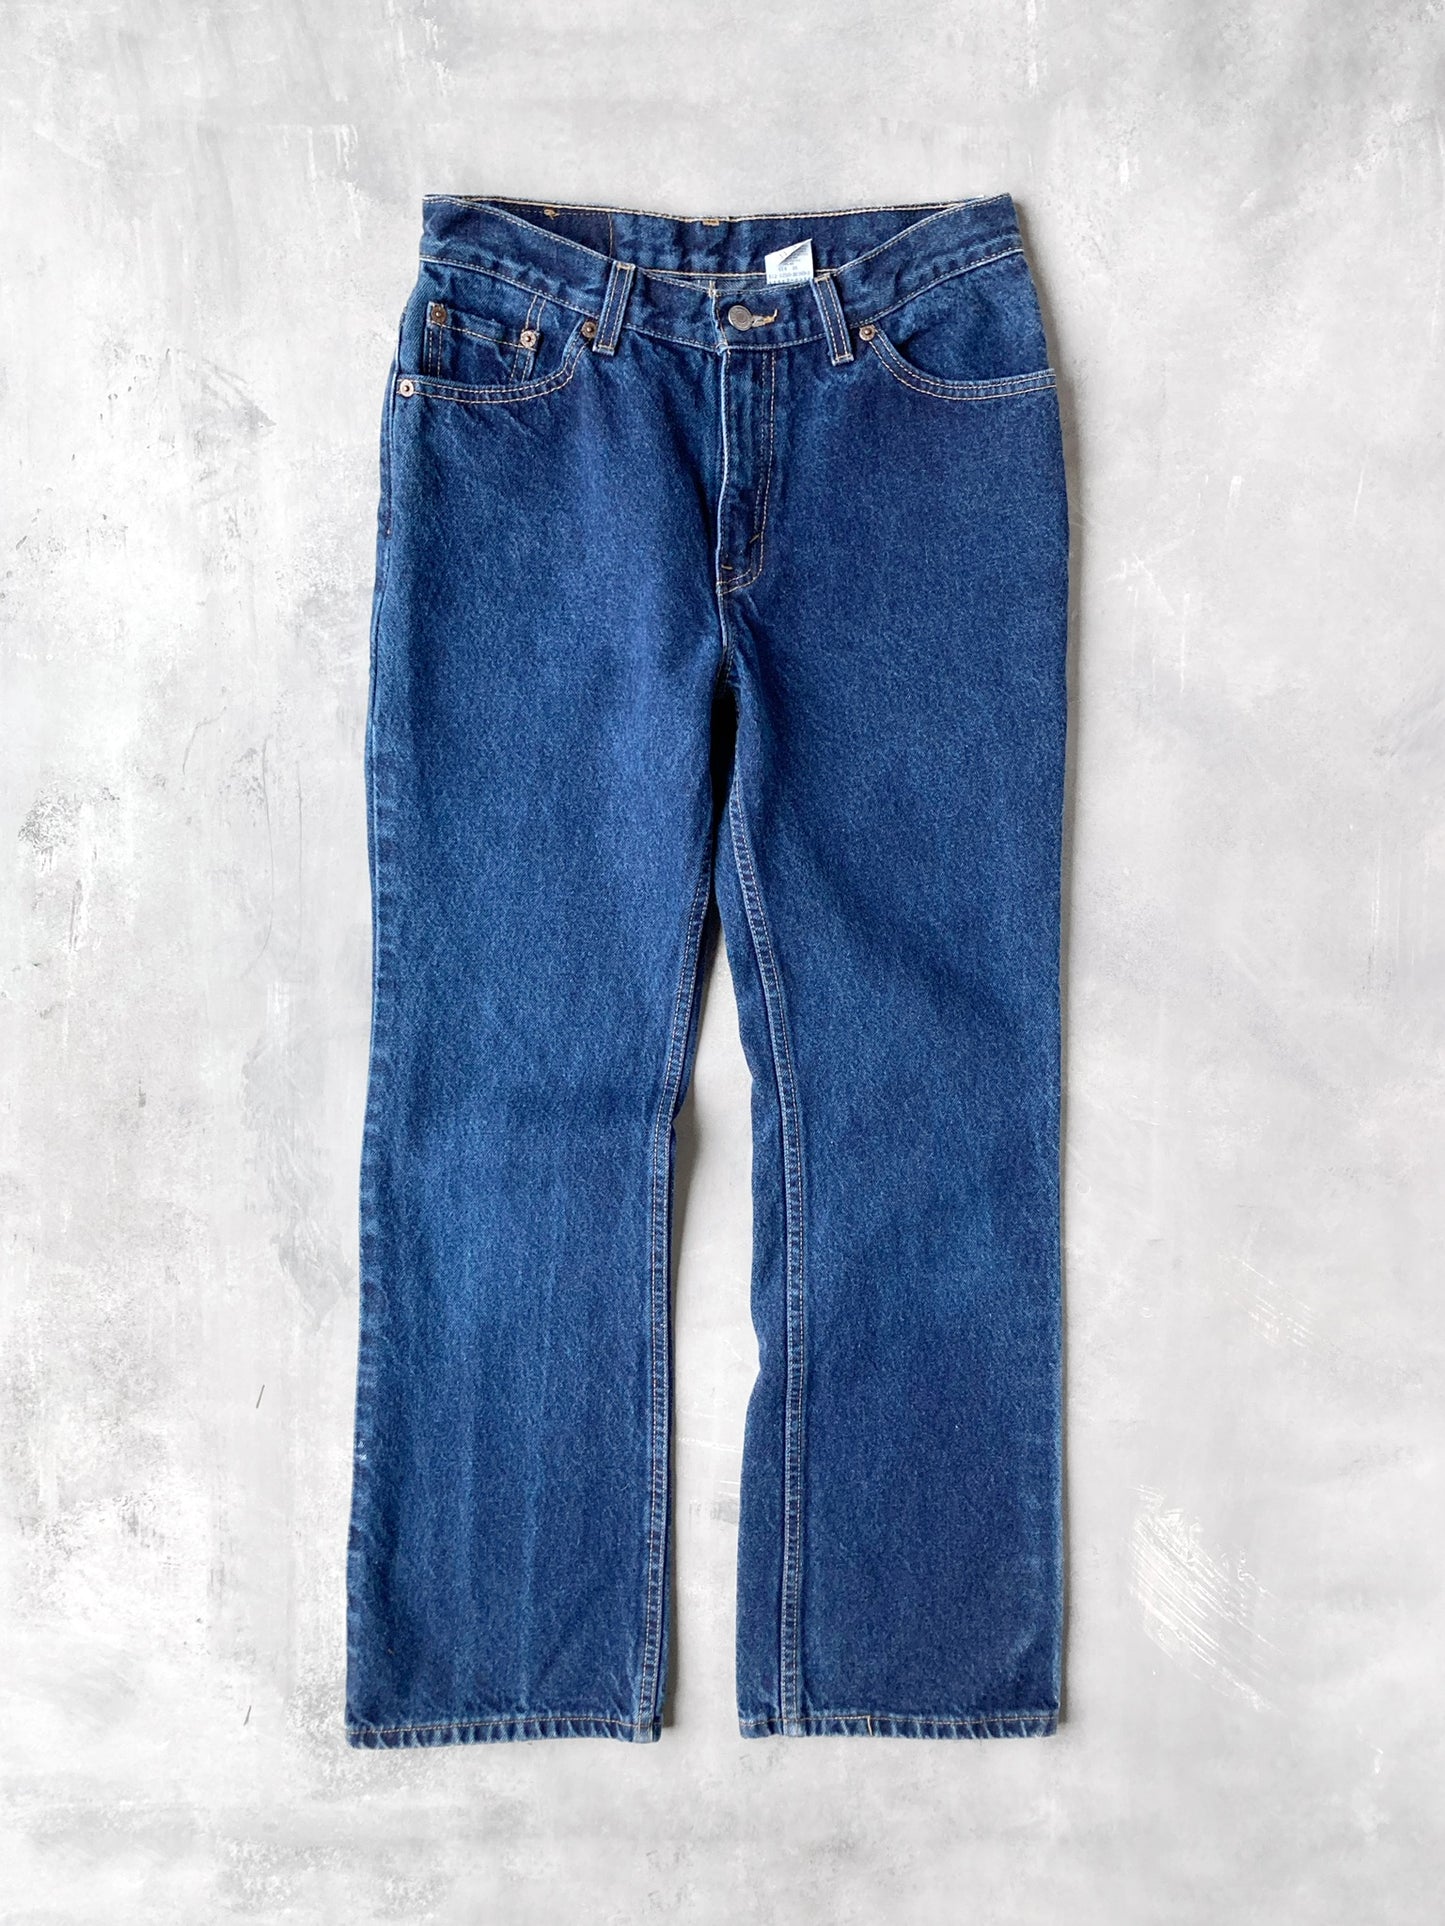 Levi's 517 Boot Cut Jeans '00 - Size 8